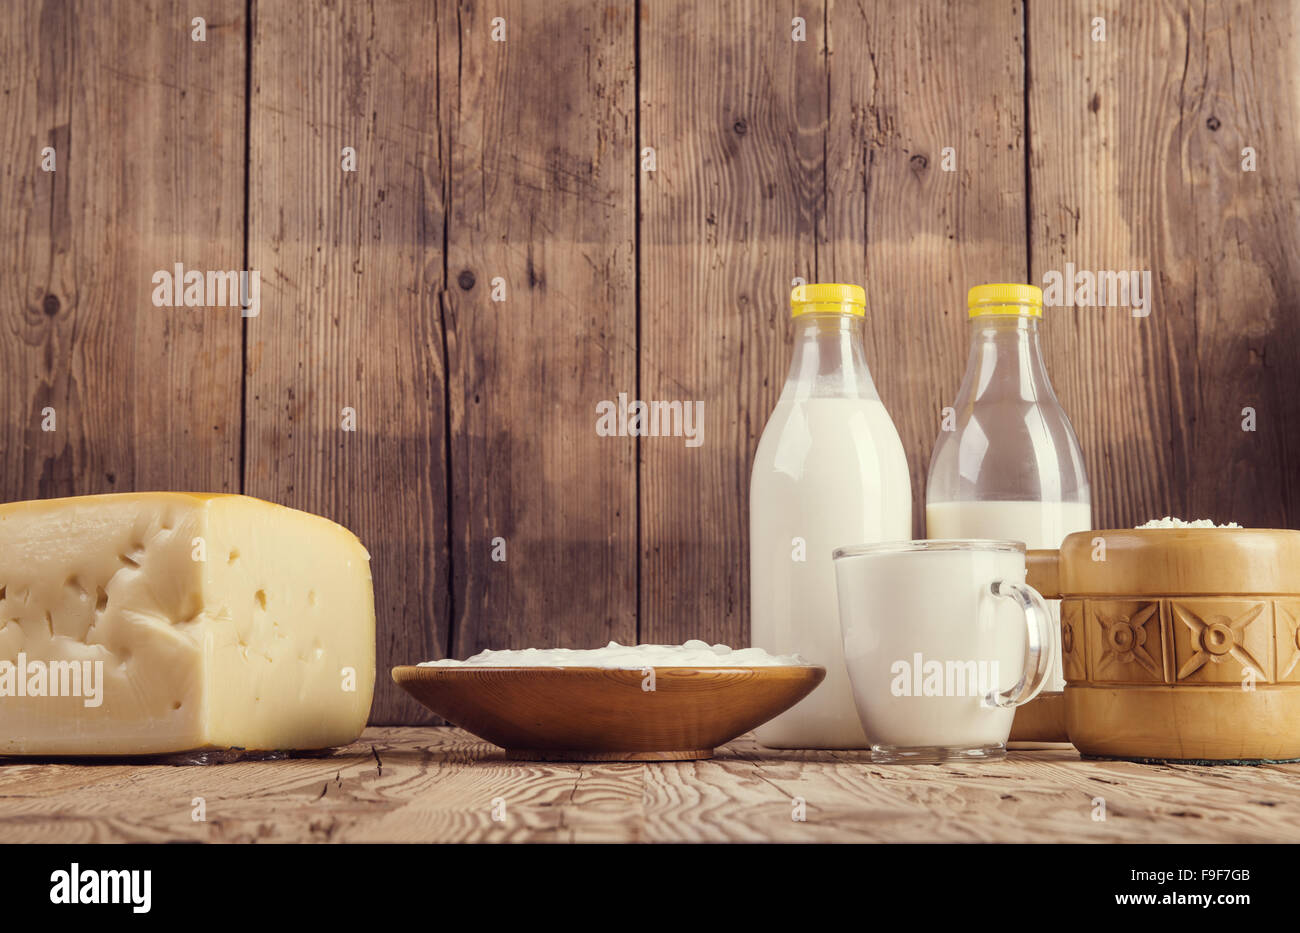 Variété de produits laitiers mis sur une table en bois historique Banque D'Images